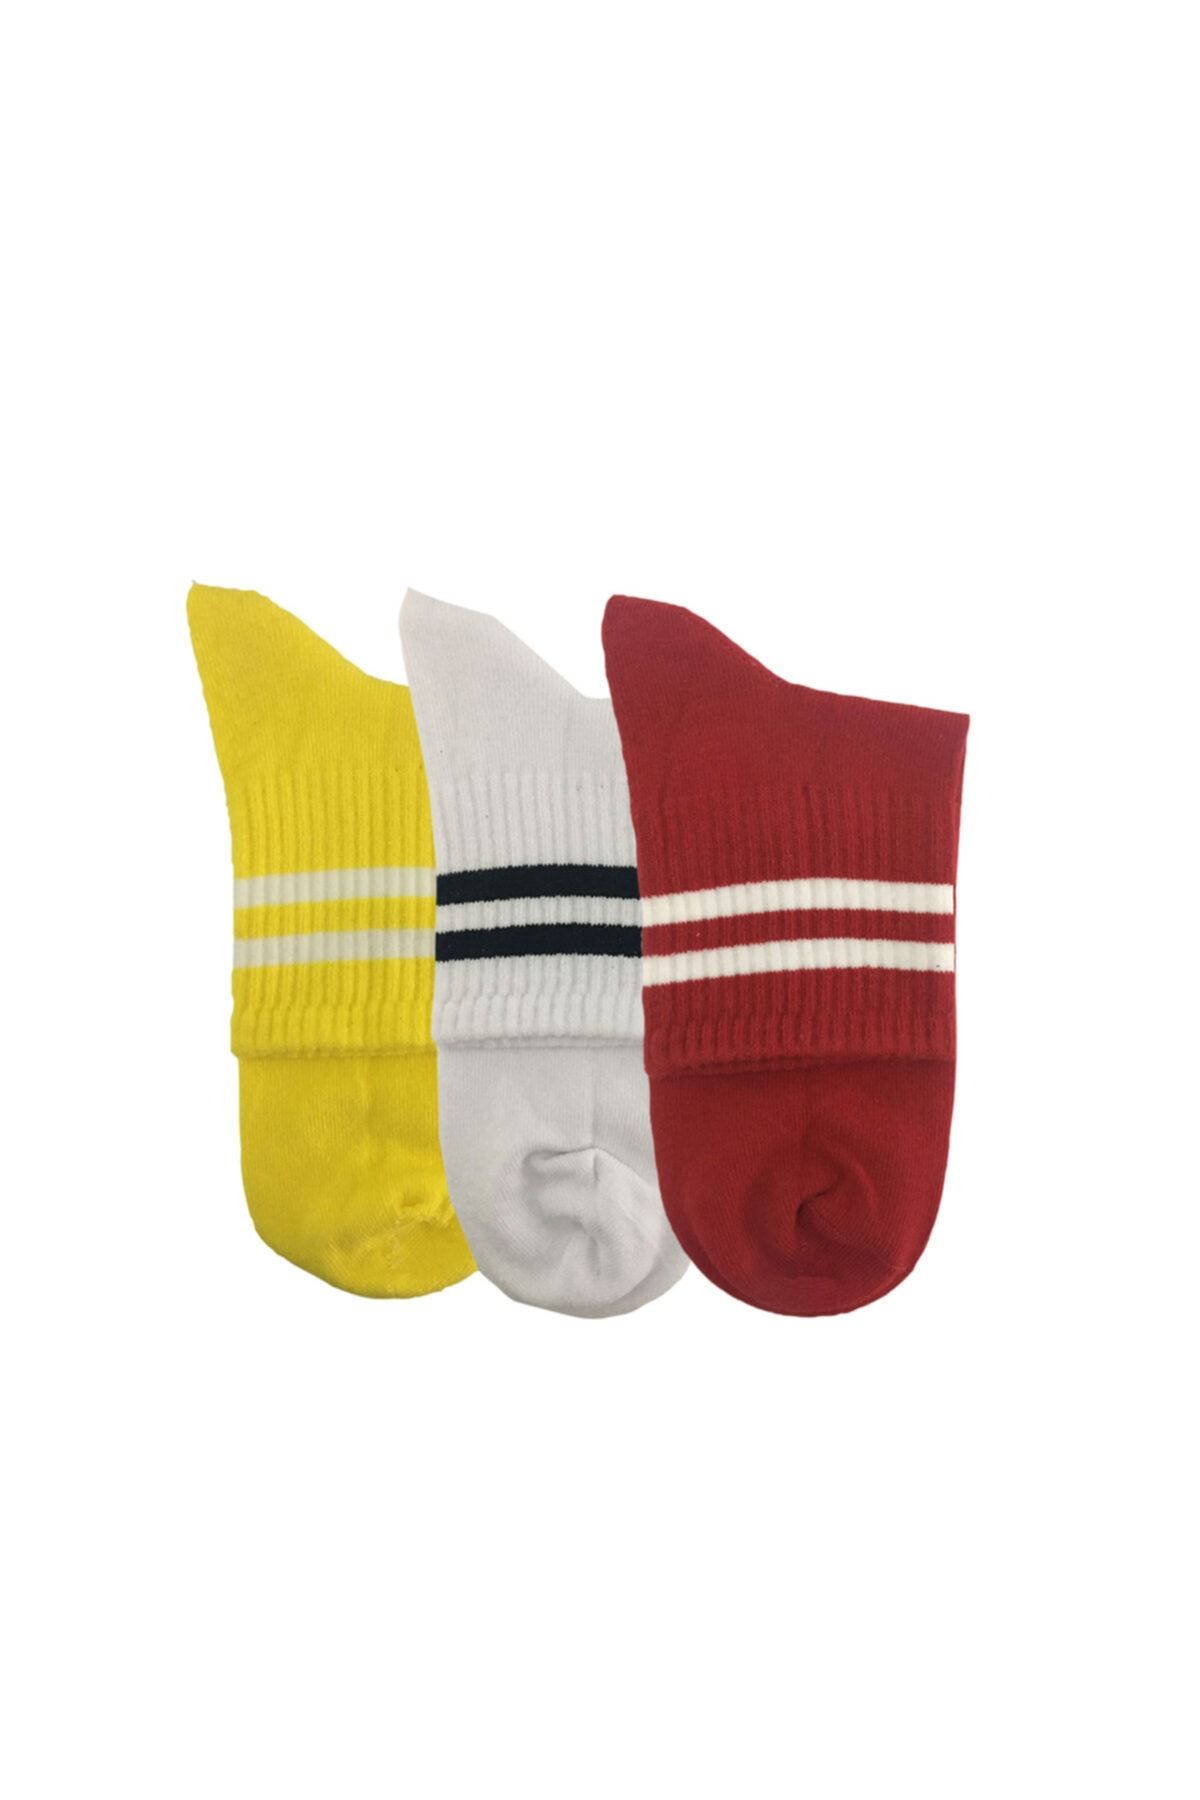 Darkzone Unisex Sarı Beyaz Kırmızı Kısa Tenis Çorabı 3'lü